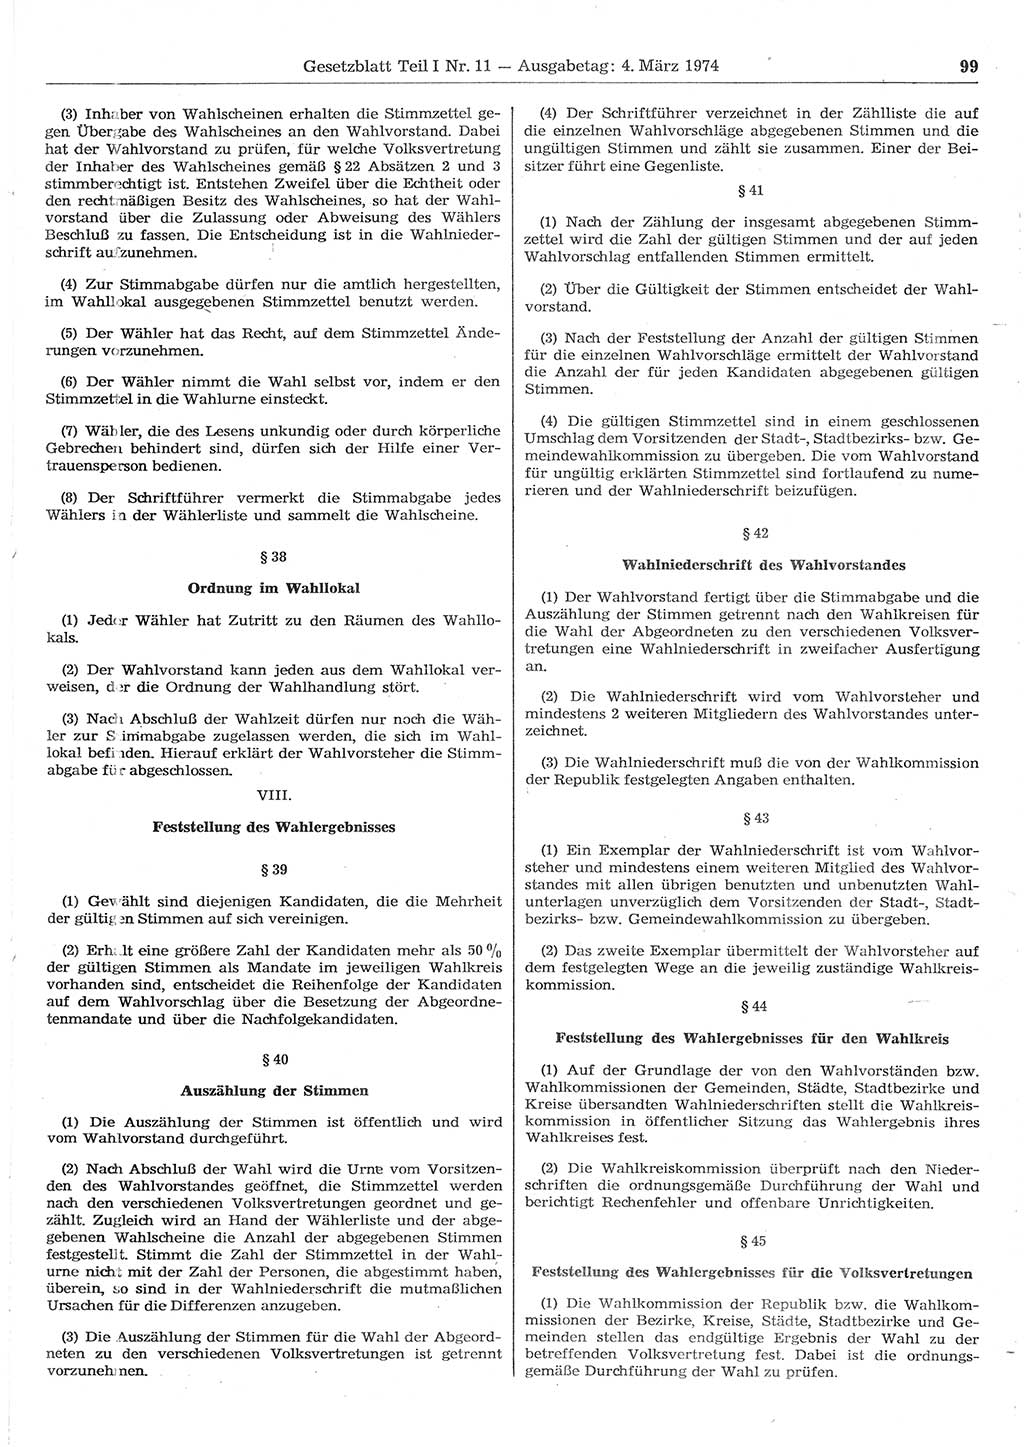 Gesetzblatt (GBl.) der Deutschen Demokratischen Republik (DDR) Teil Ⅰ 1974, Seite 99 (GBl. DDR Ⅰ 1974, S. 99)